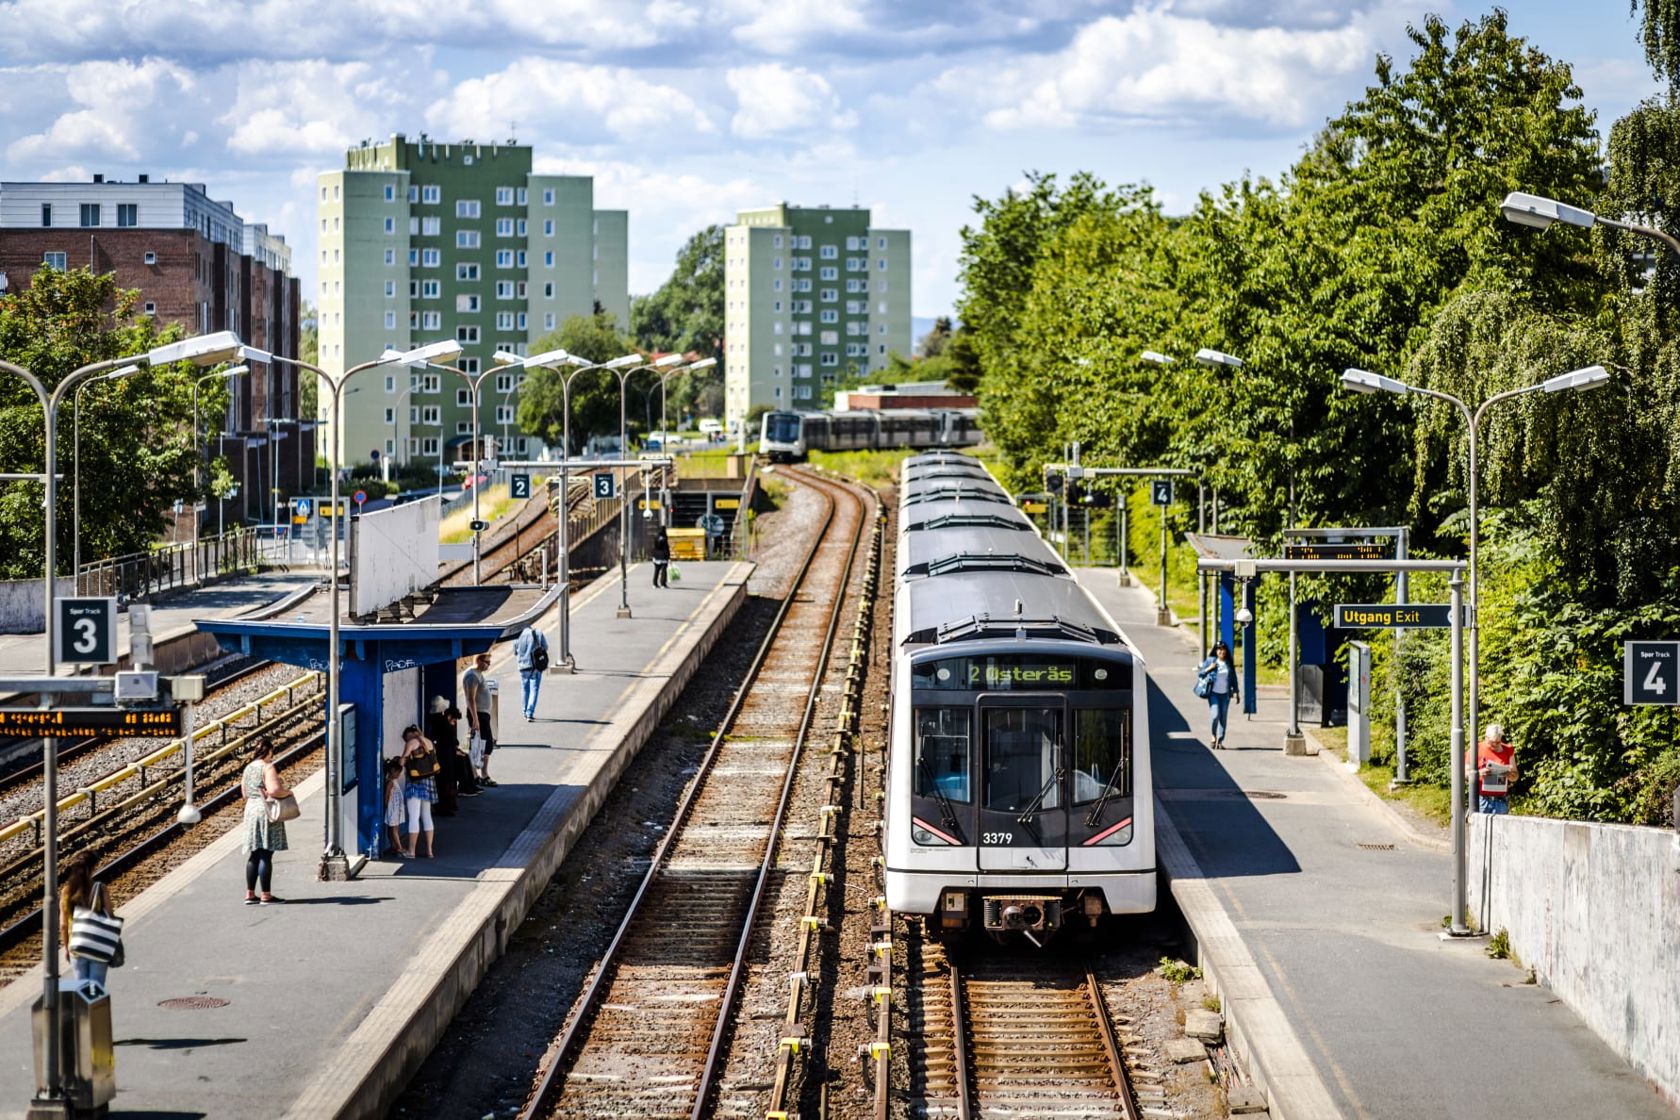 OPPGRADERING: Frem til om lag mai 2023 skal T-banelinjene 1, 2, 3 og 4 kjøre på samme spor forbi Brynseng T-banestasjon. Målet er å oppgradere den nesten 100 år gamle T-banetraseen som eksisterer i dag (foto: Sporveien).